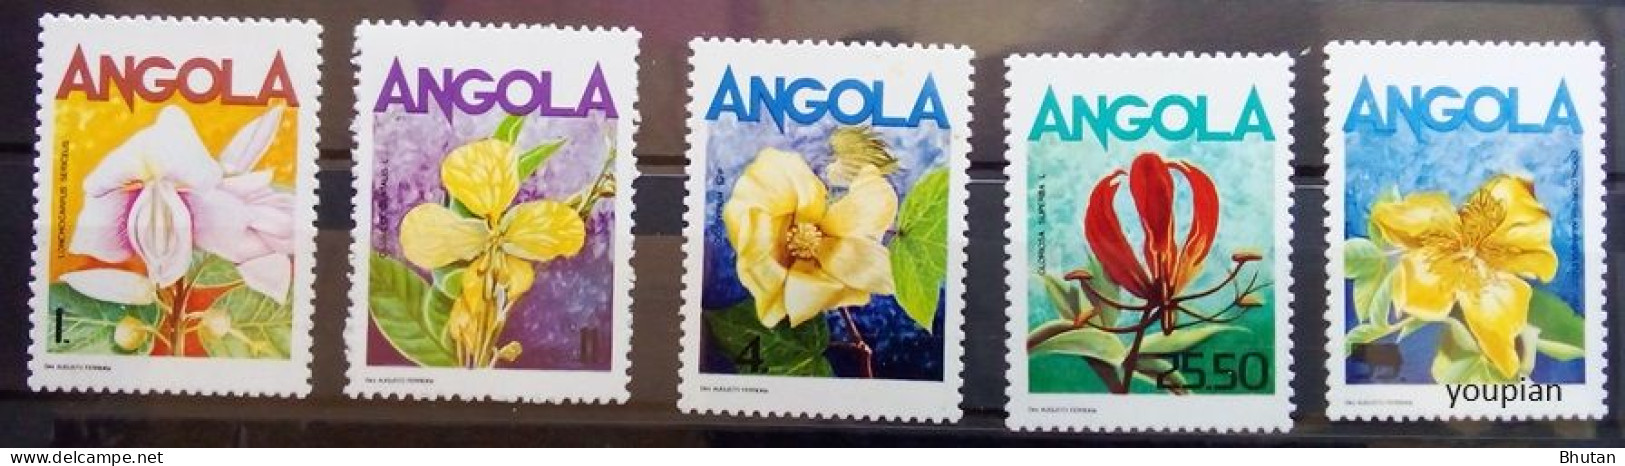 Angola 1985, Flowers, MNH Stamps Set - Angola